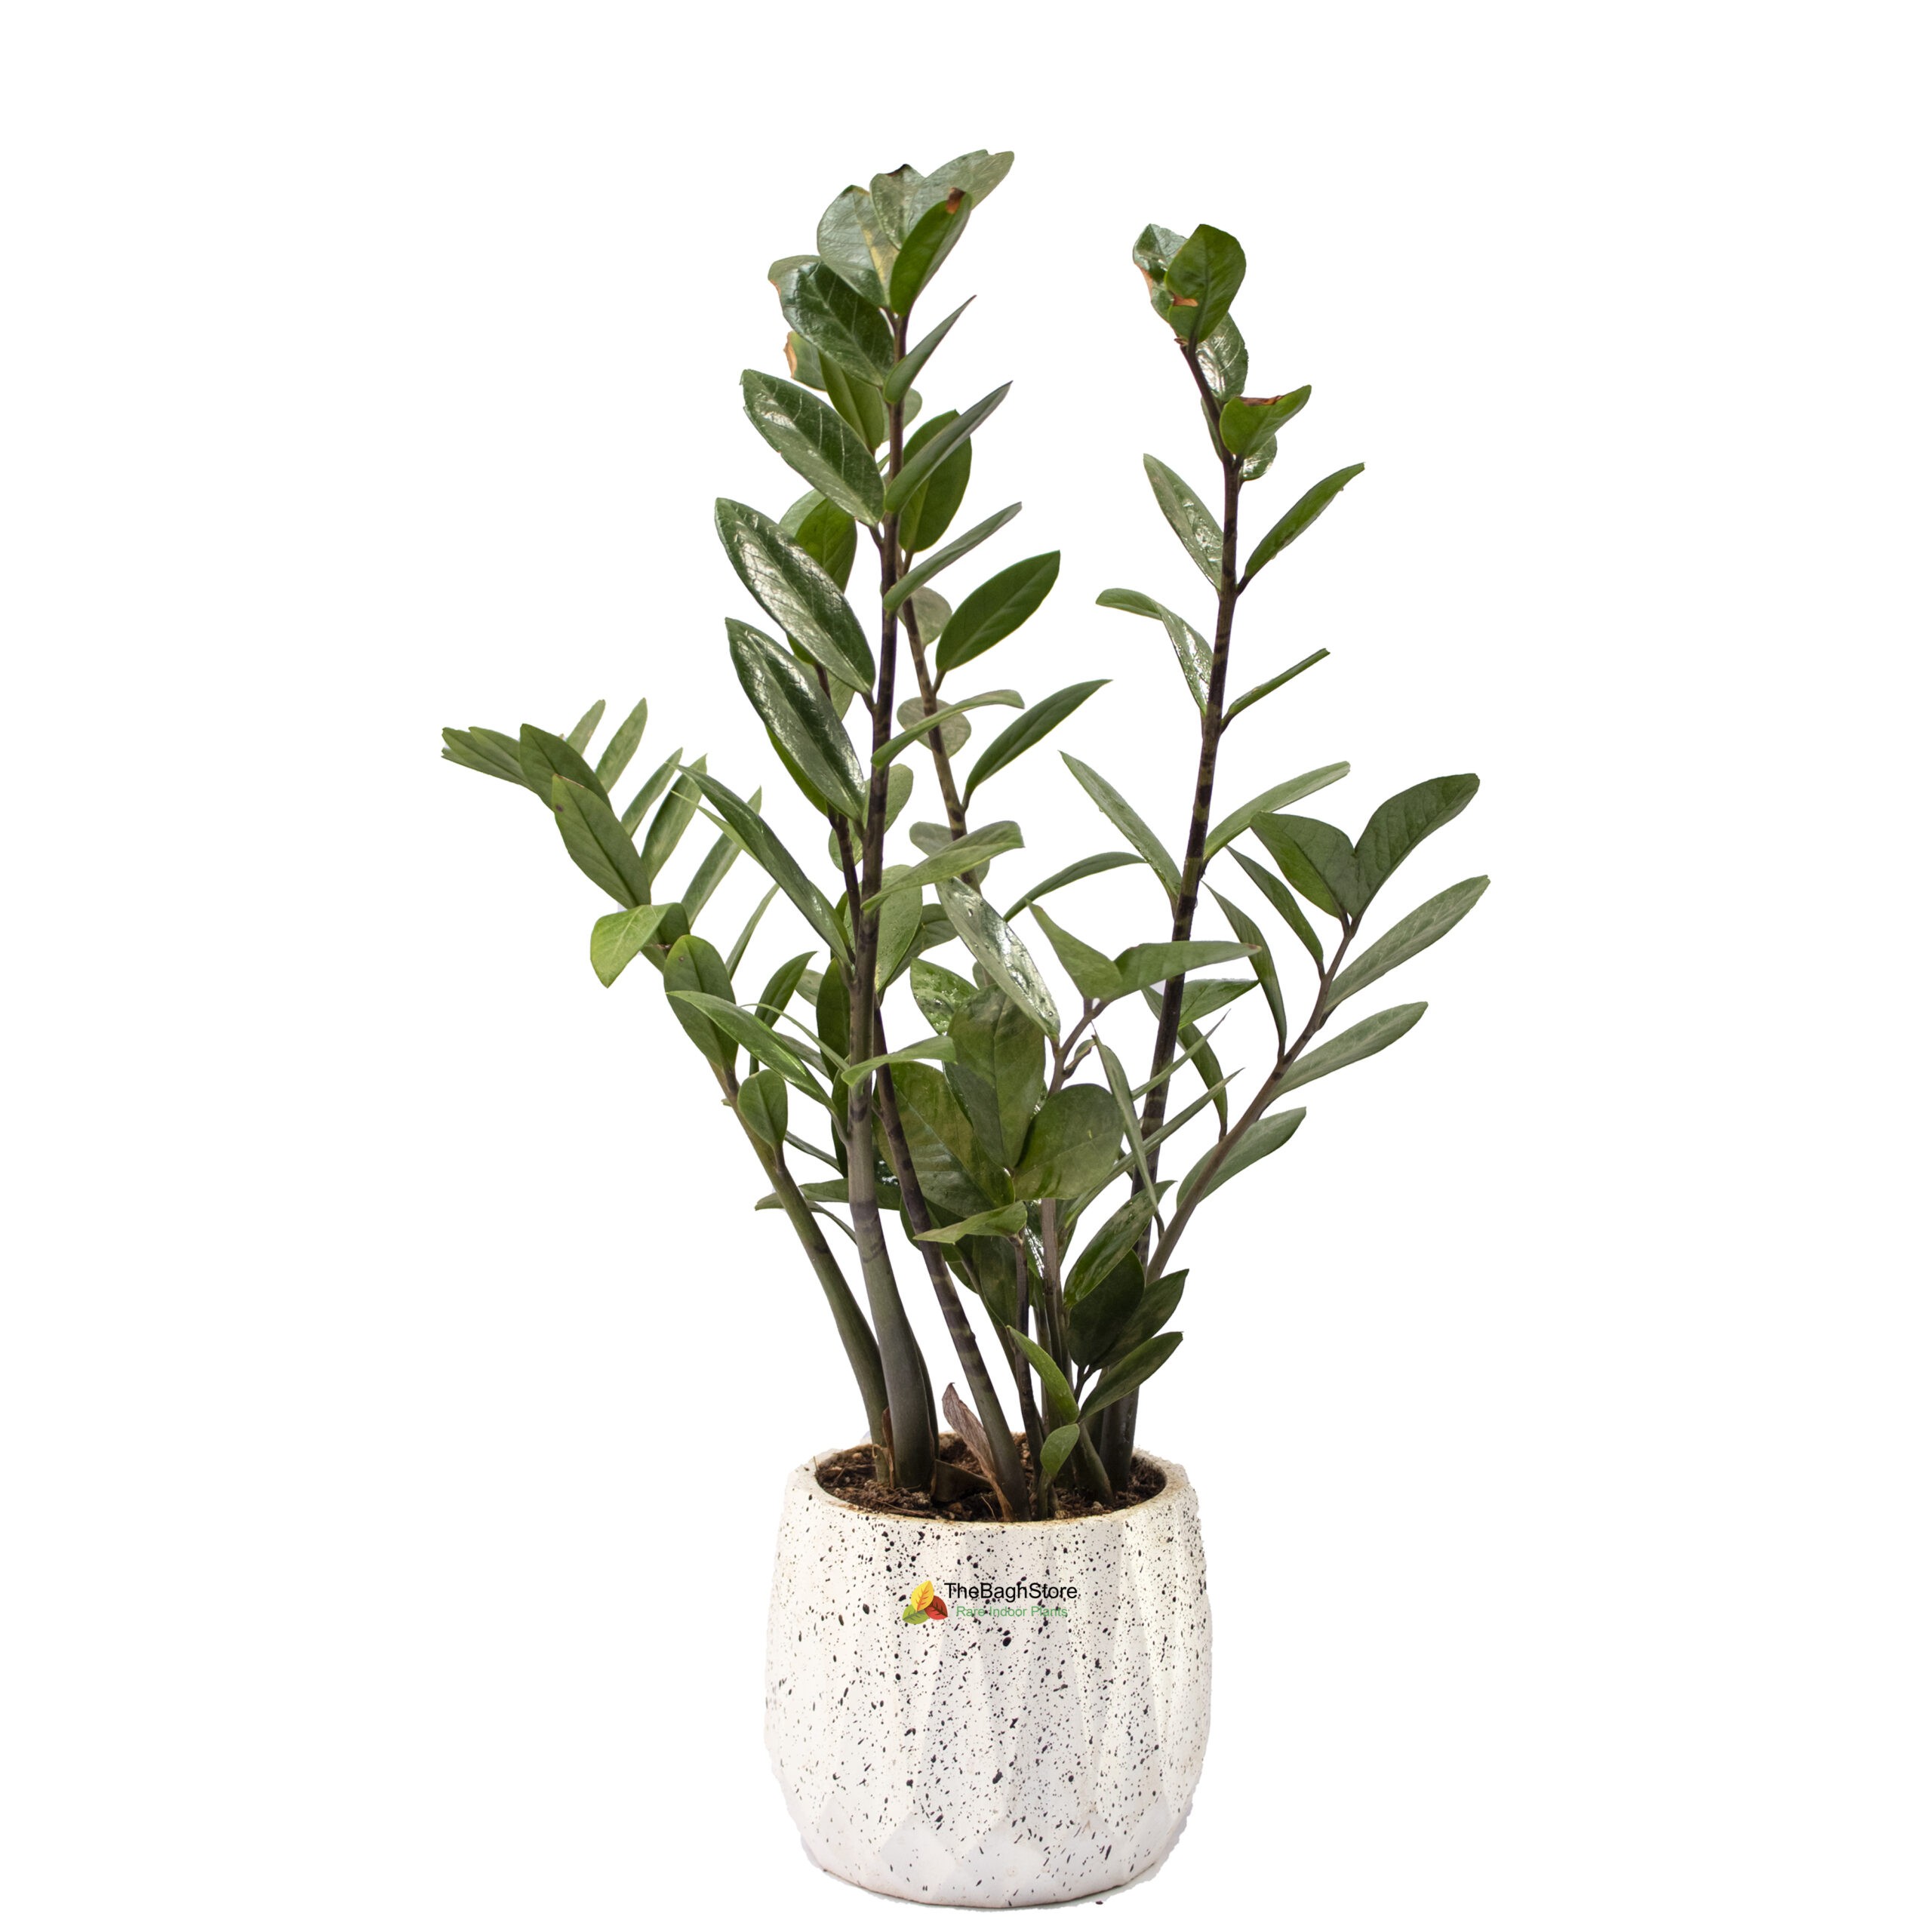 big zz plant in white concrete pot - decorative plant for home